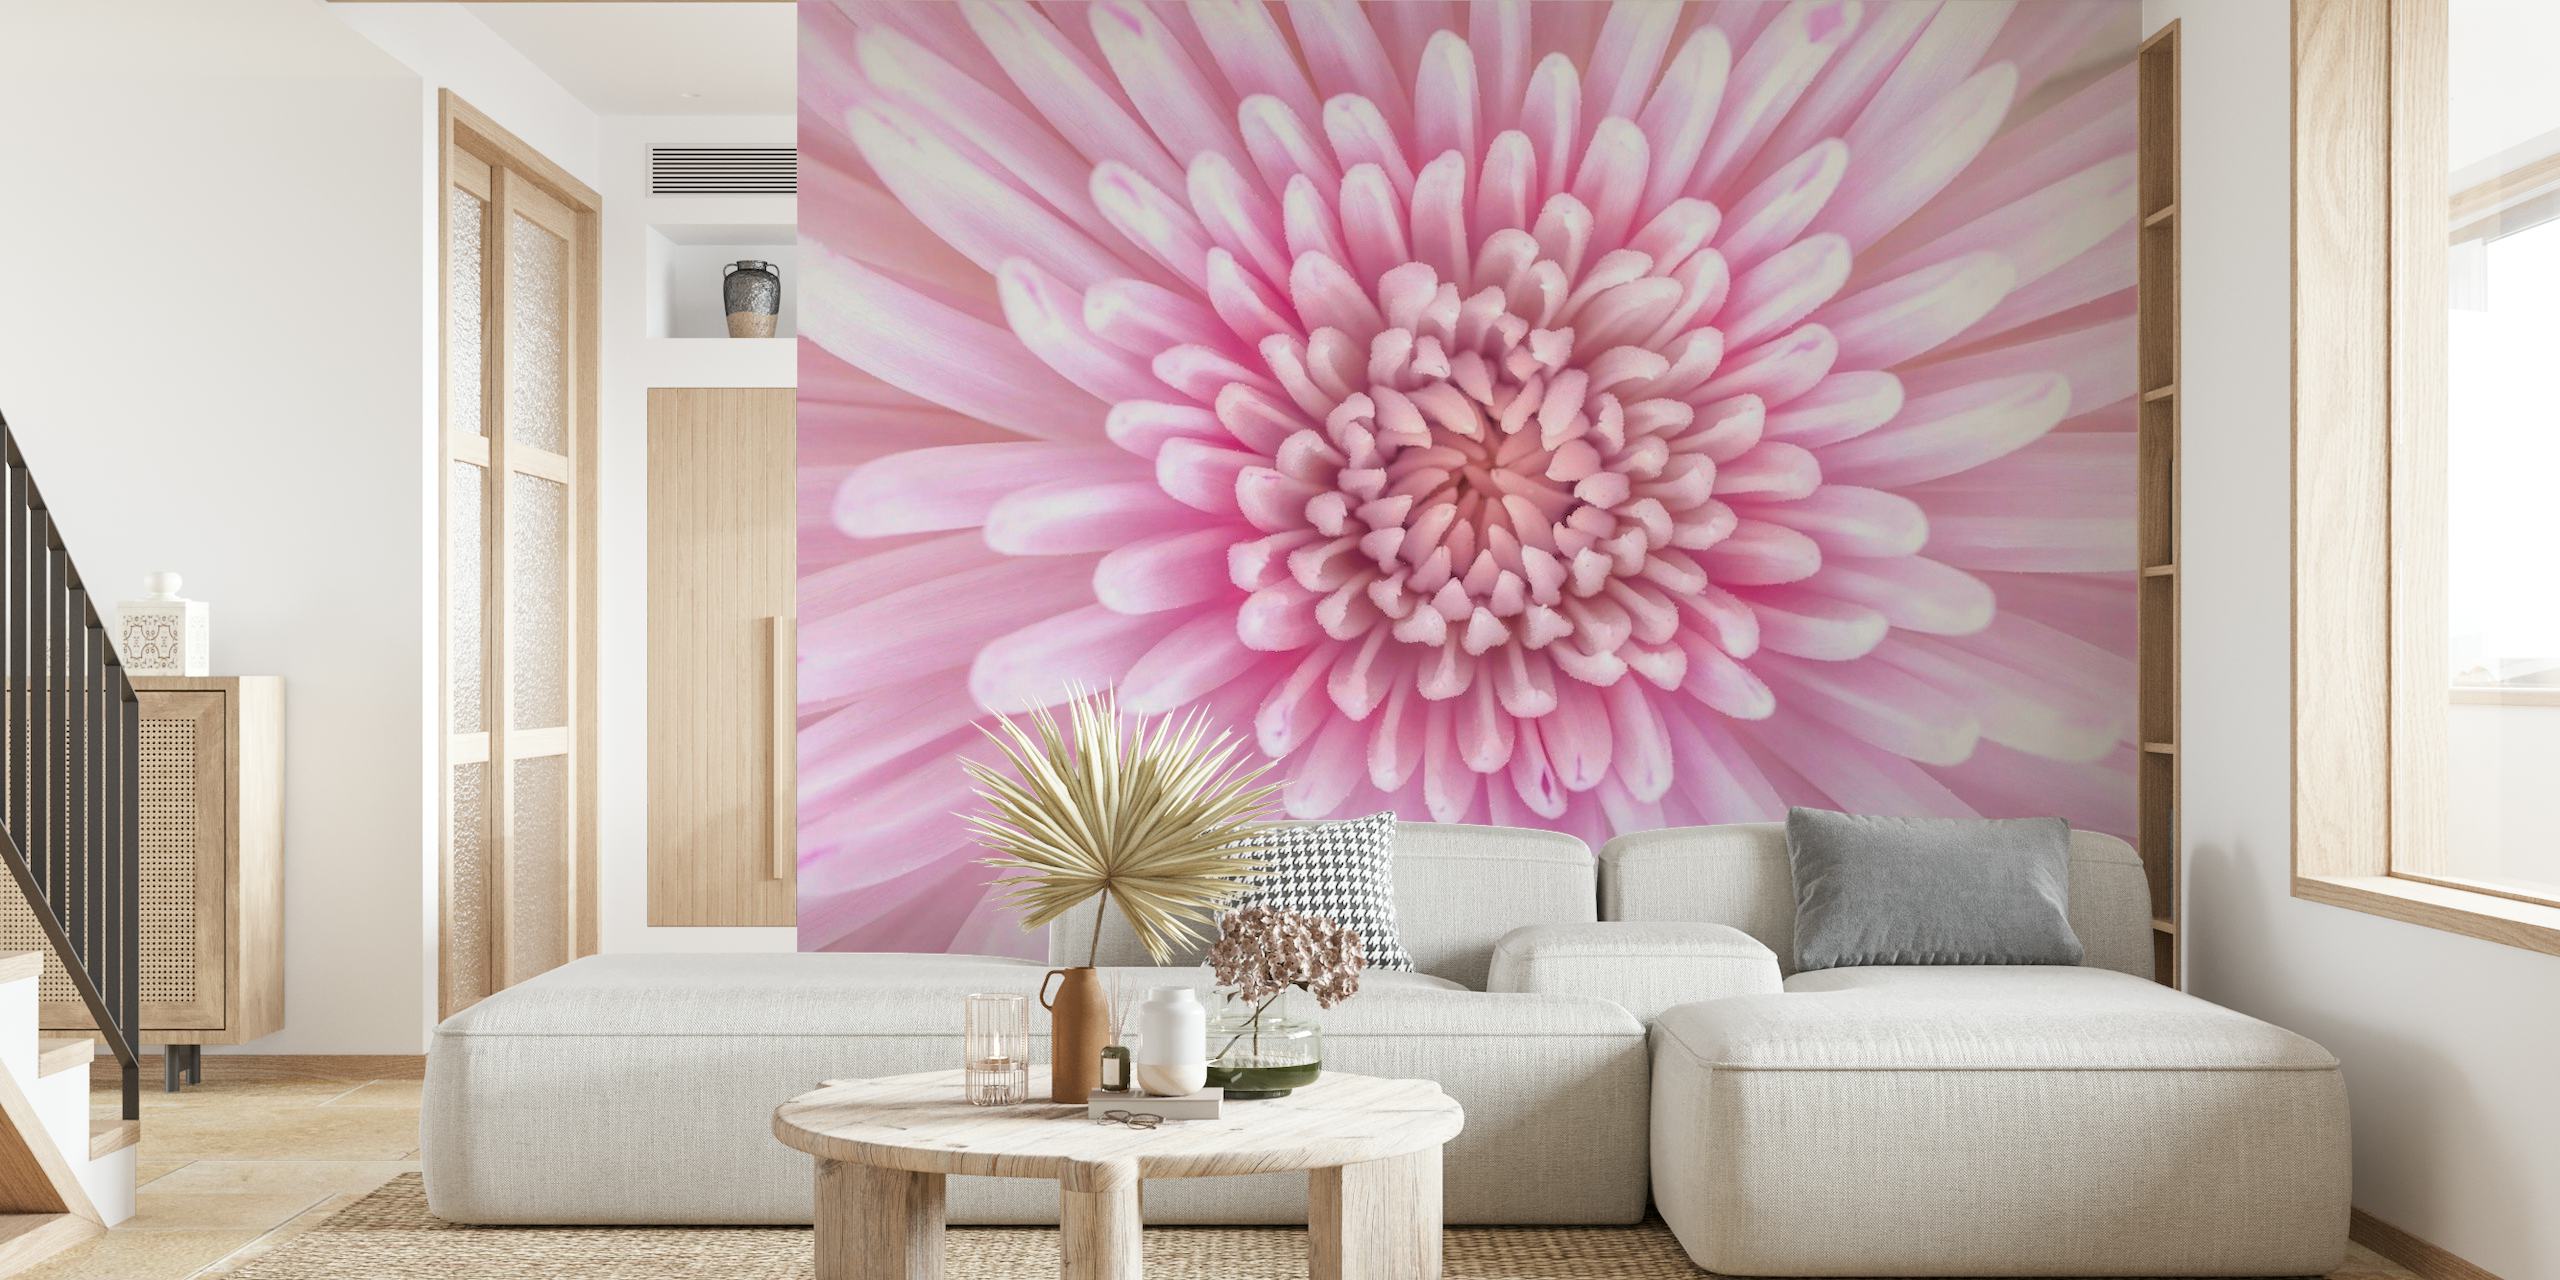 Chrysanthemum Flower behang